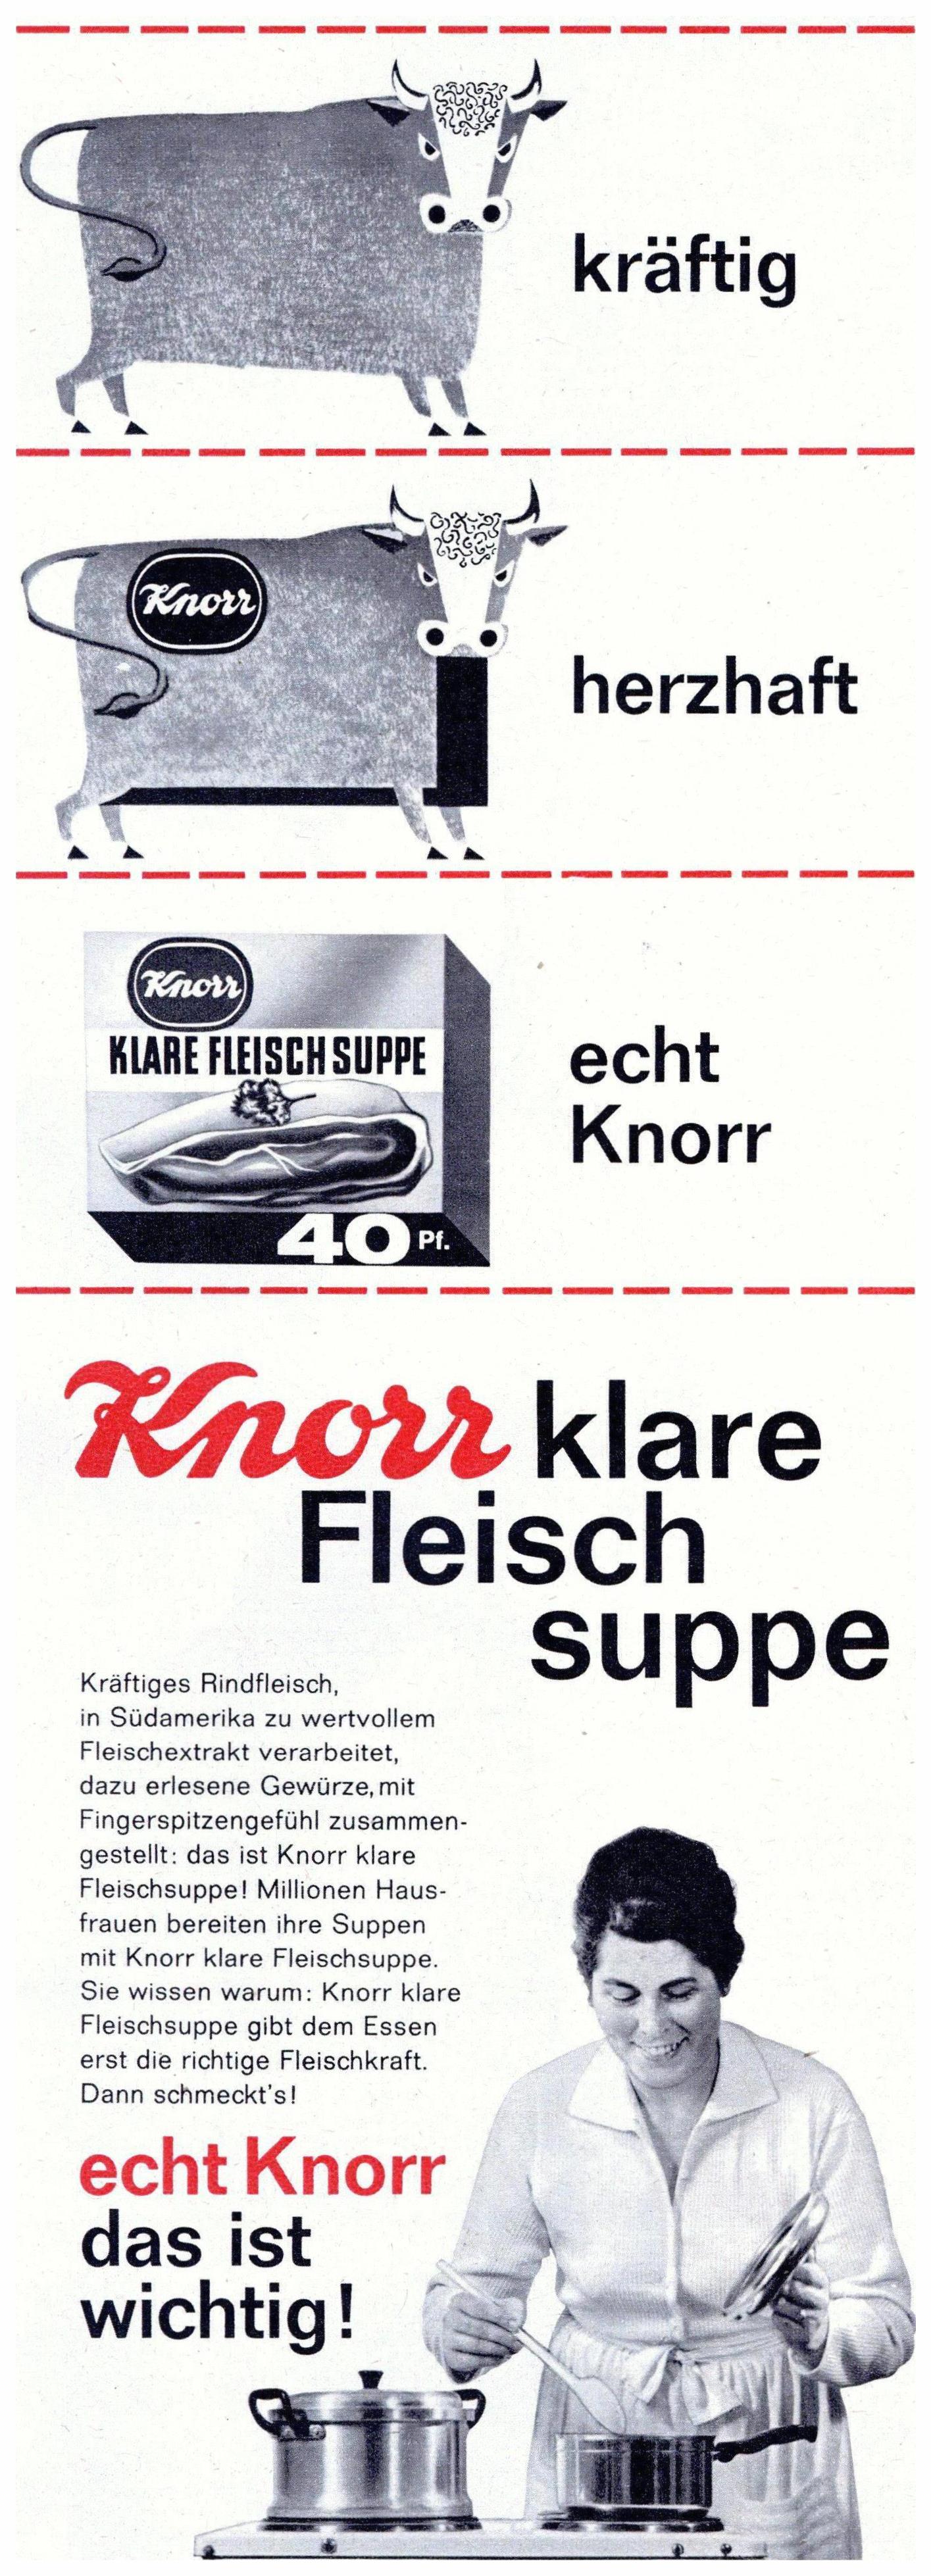 Knorr 1962 03.jpg